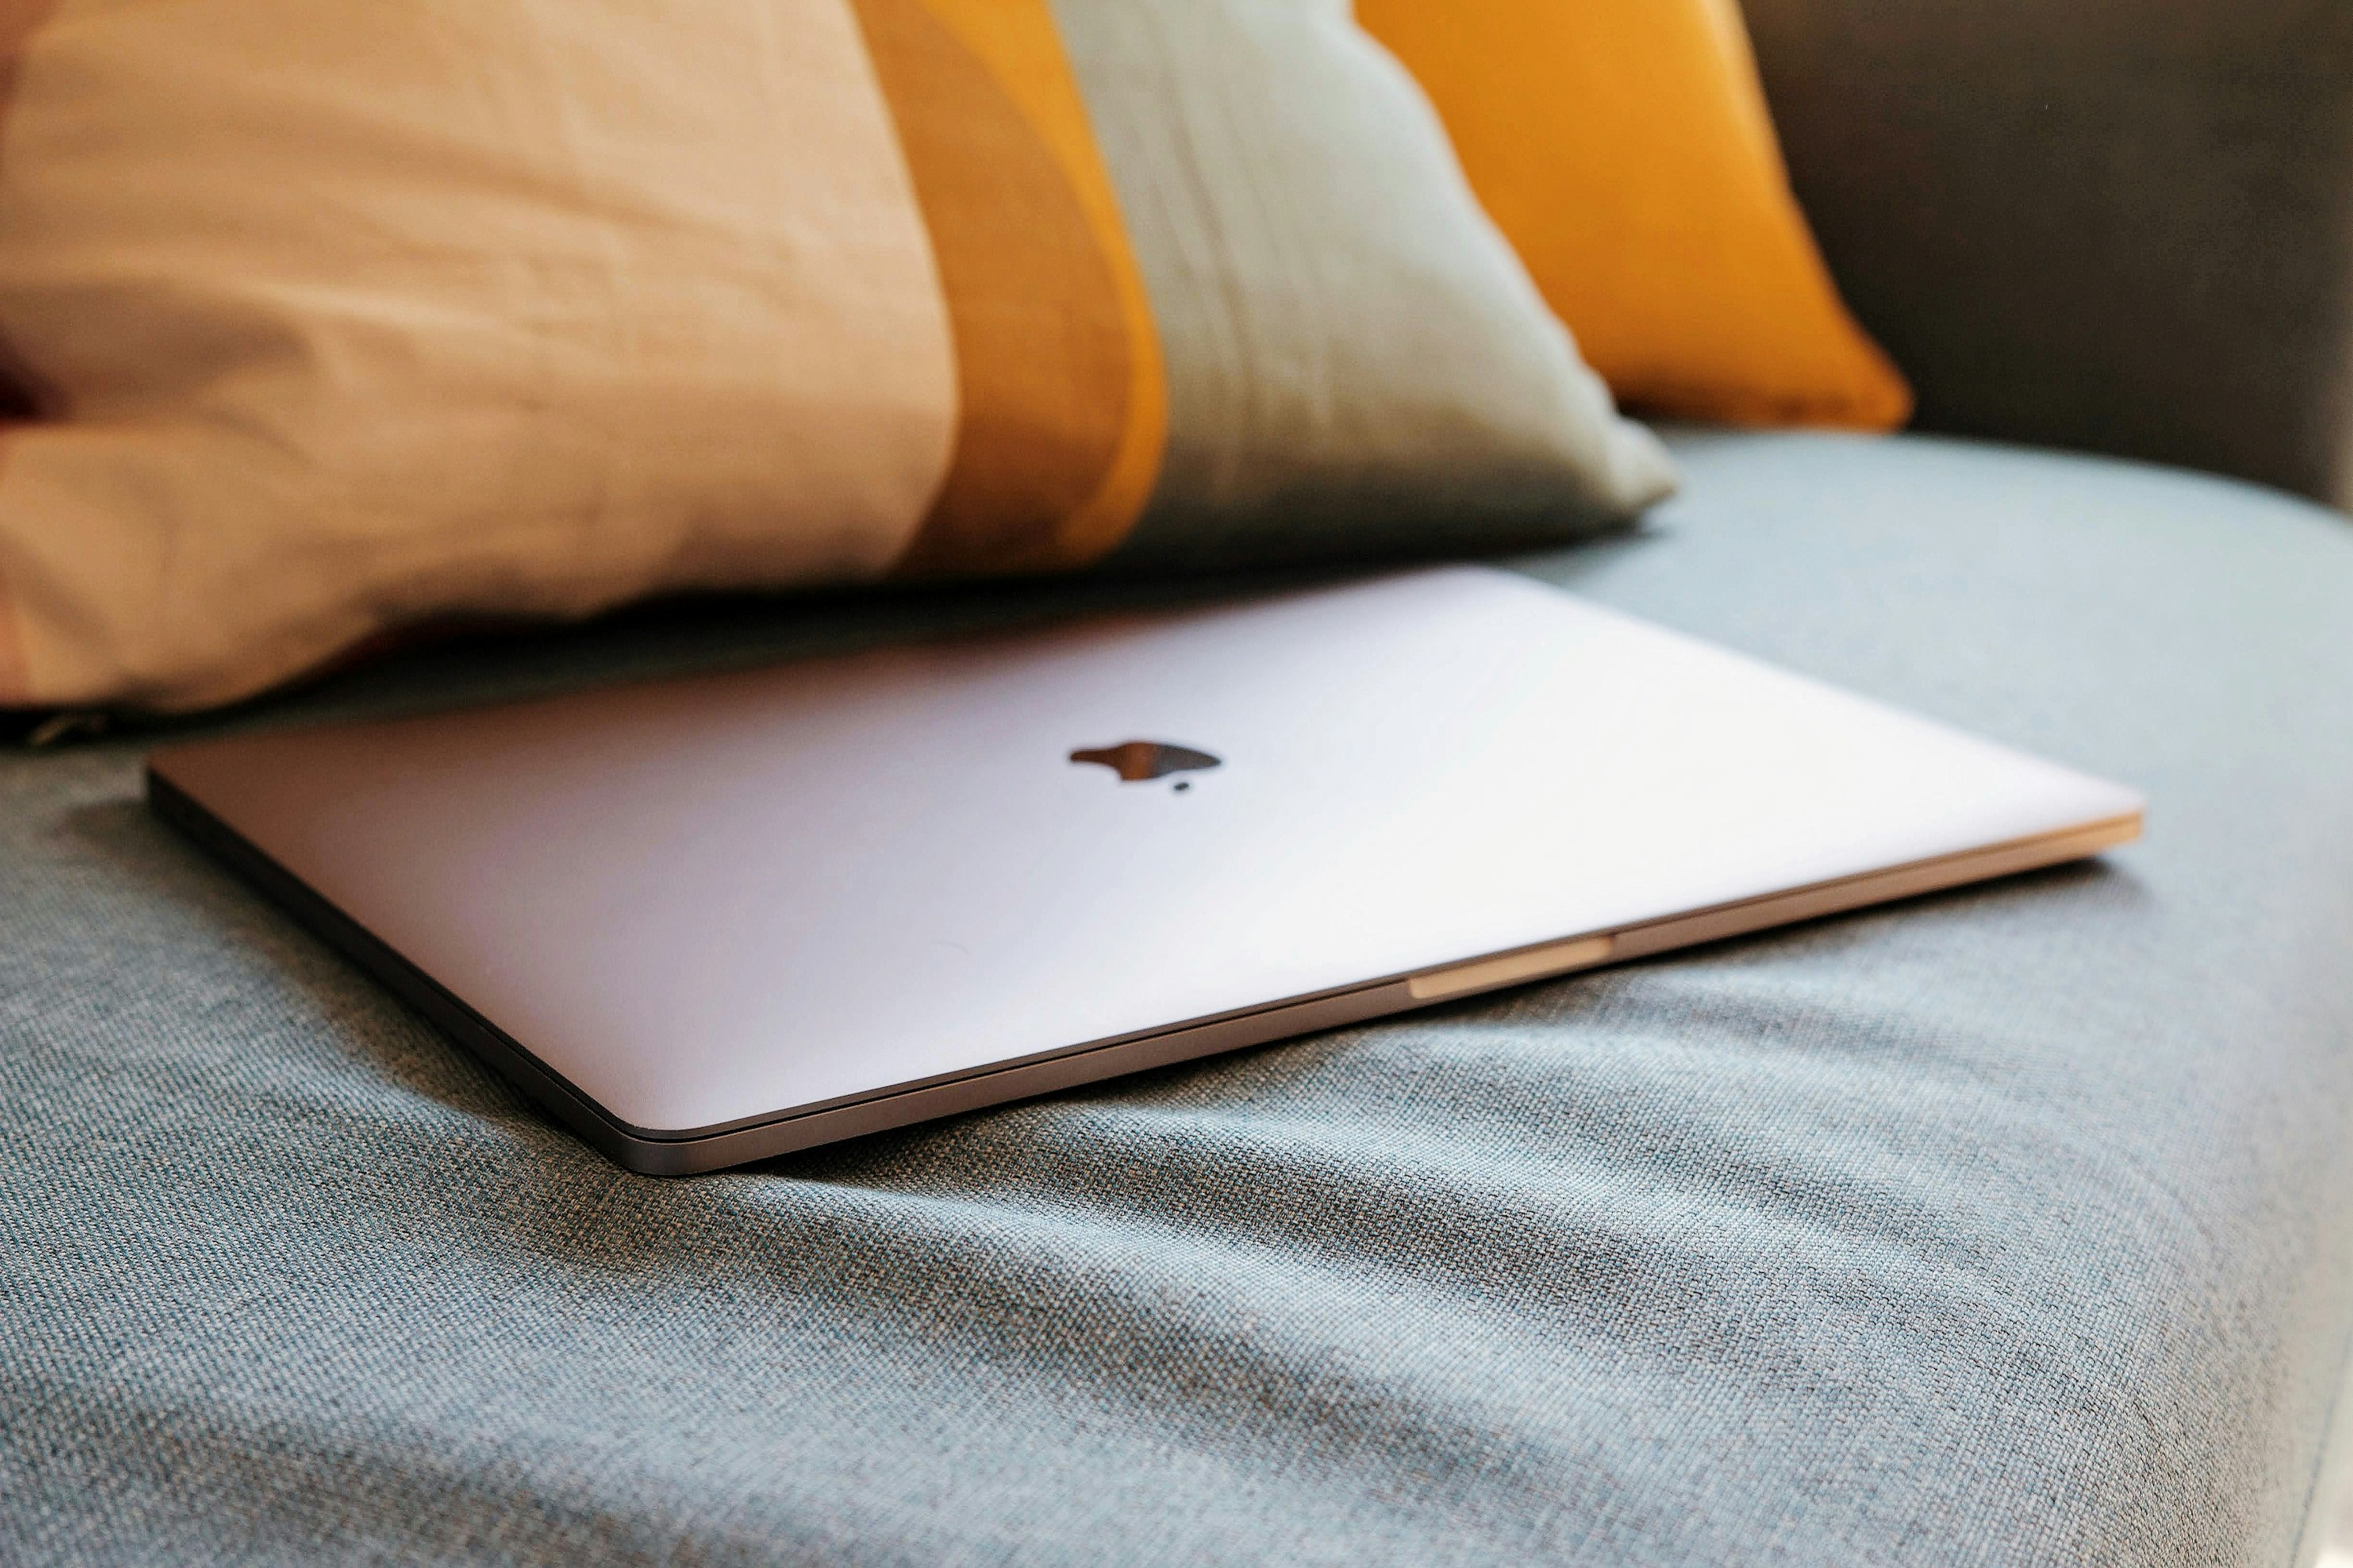 Será que alguma vez a Apple irá lançar um Mac com ecrã tátil?